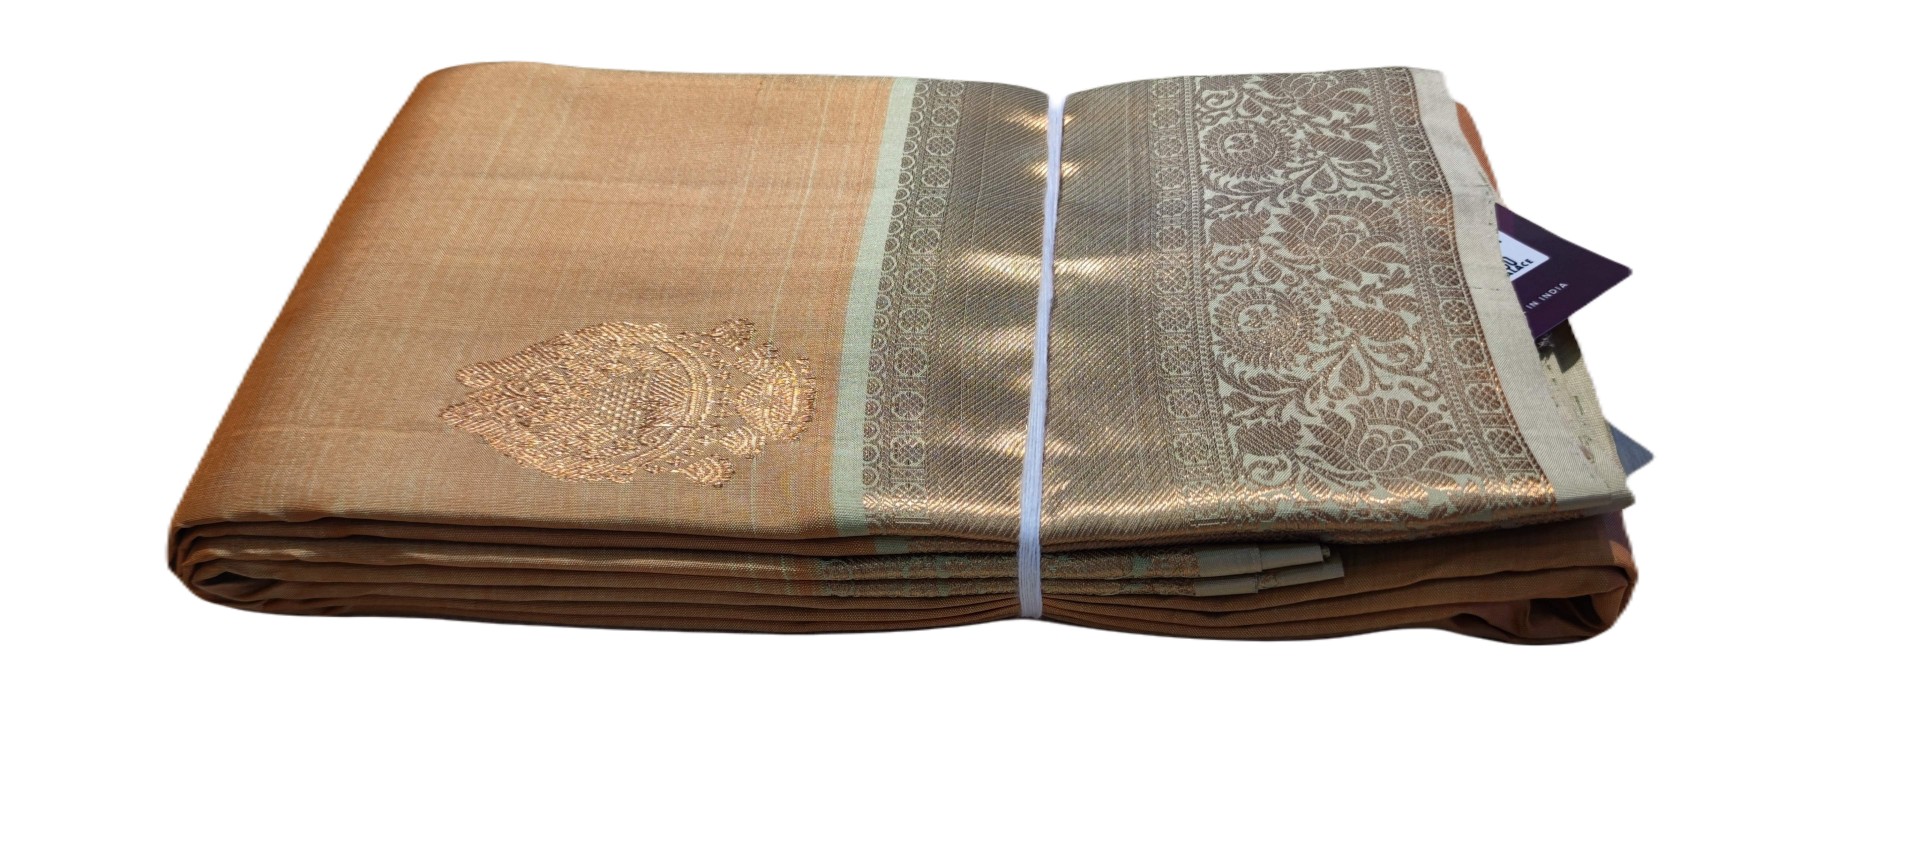 art-silk-sarees